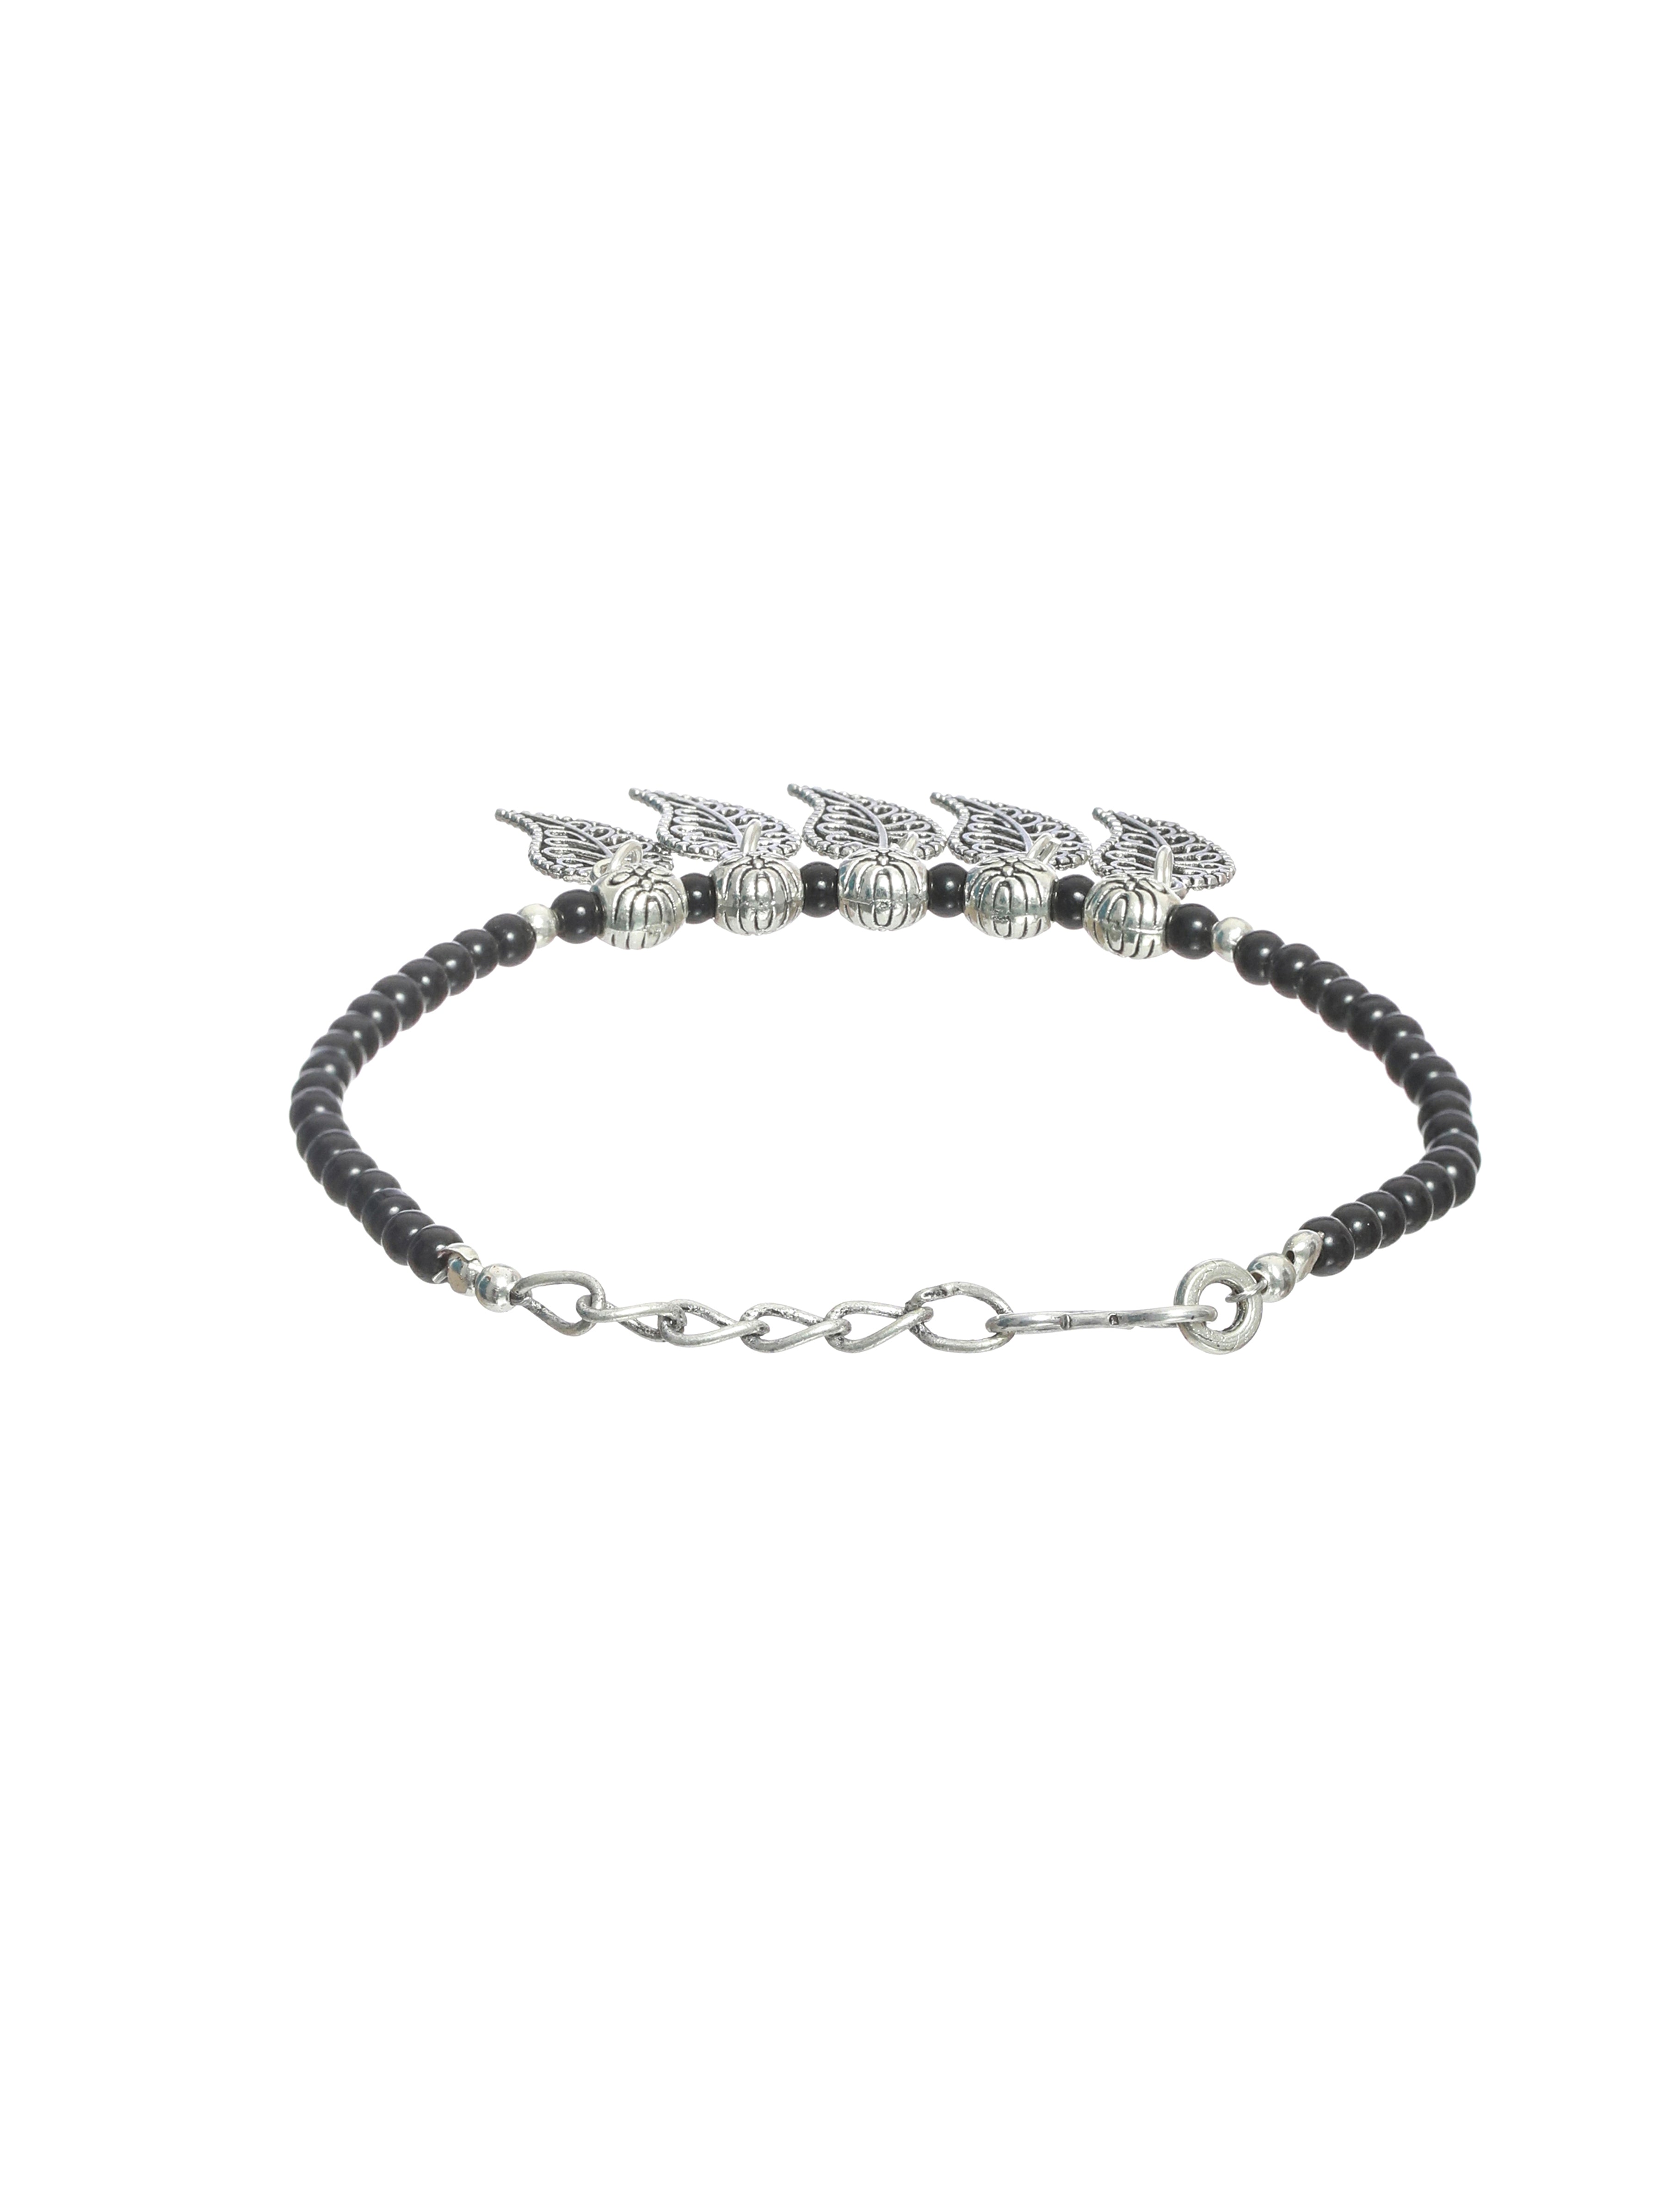 Set of 2 Black & Silver-Toned Bracelet/Anklets